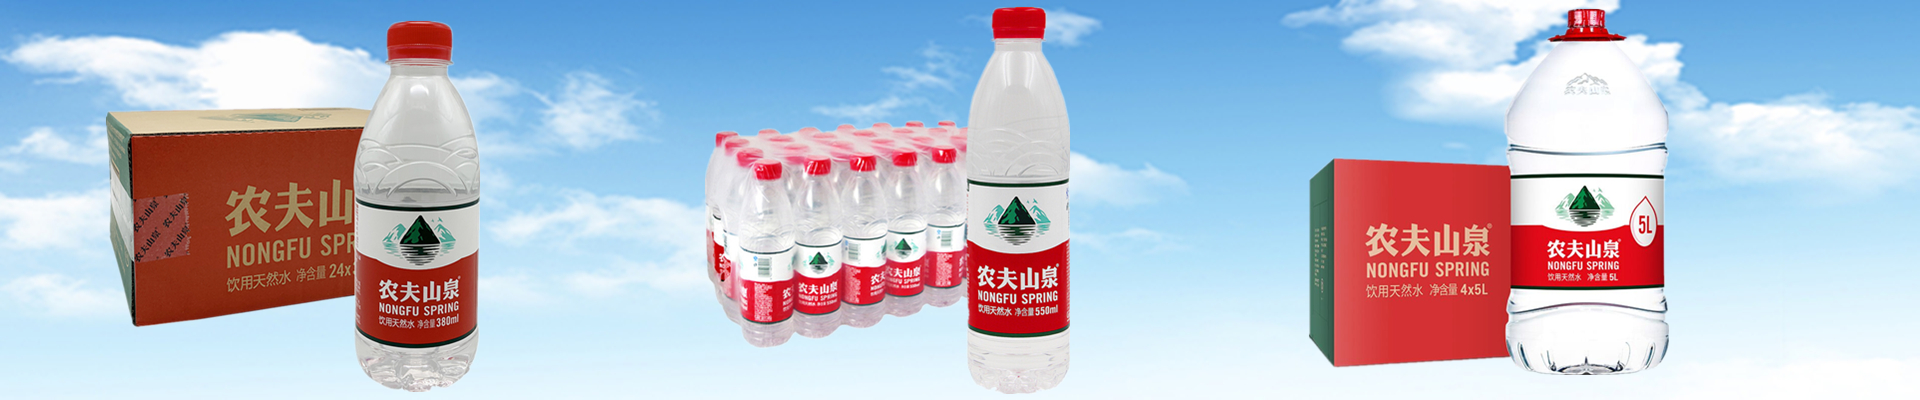 南京农夫山泉小瓶装水